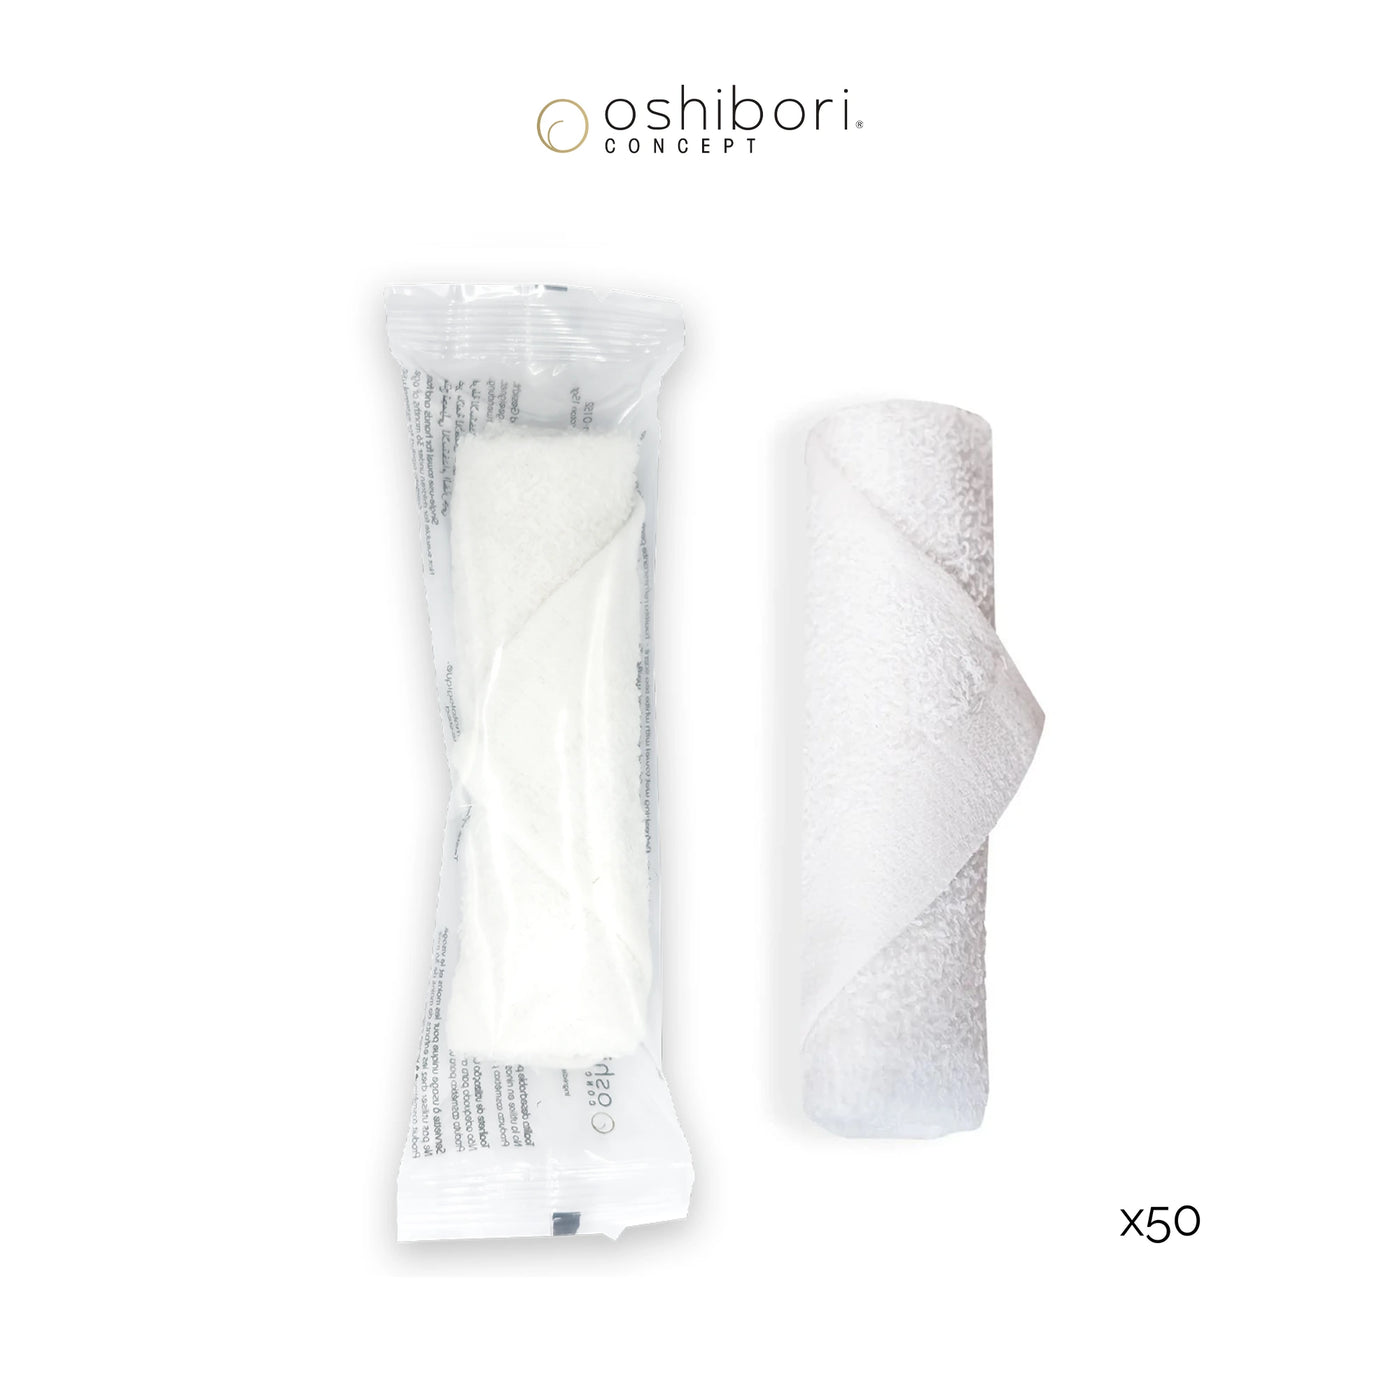 Oshibori rafraichissant - 15 grammes - Transparent (x50)